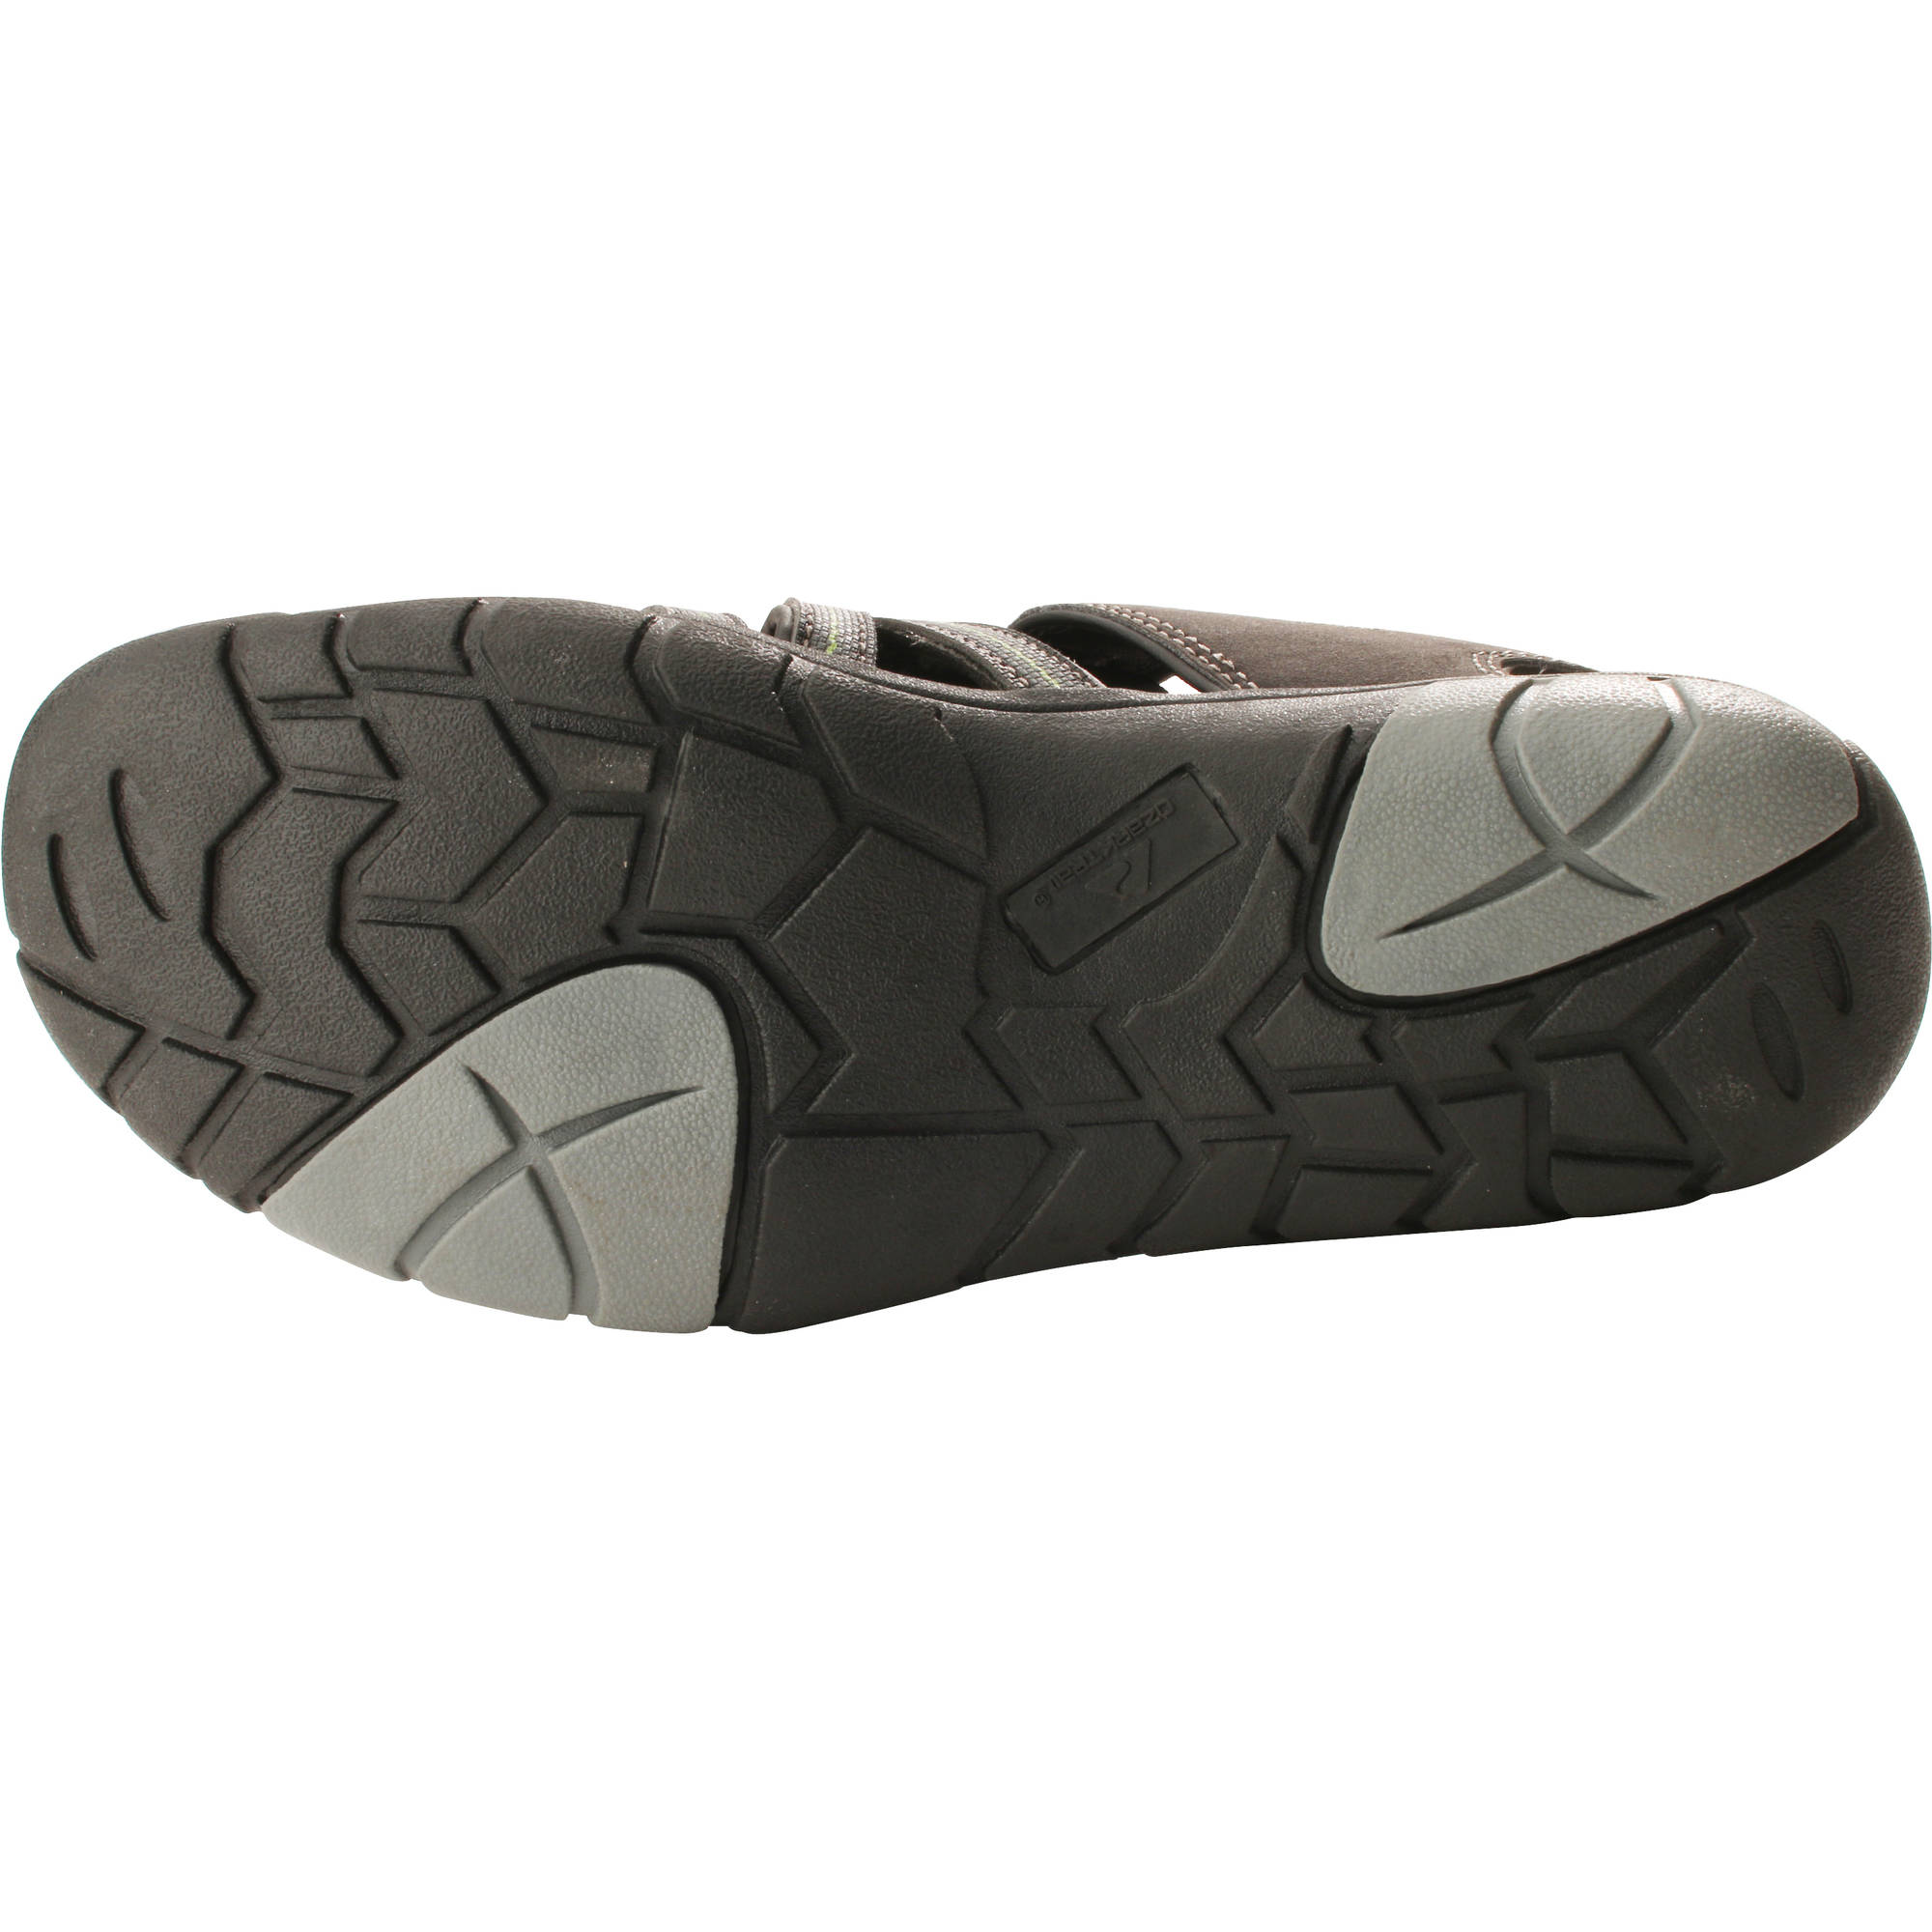 Men's Bumptoe Sandal - image 5 of 5